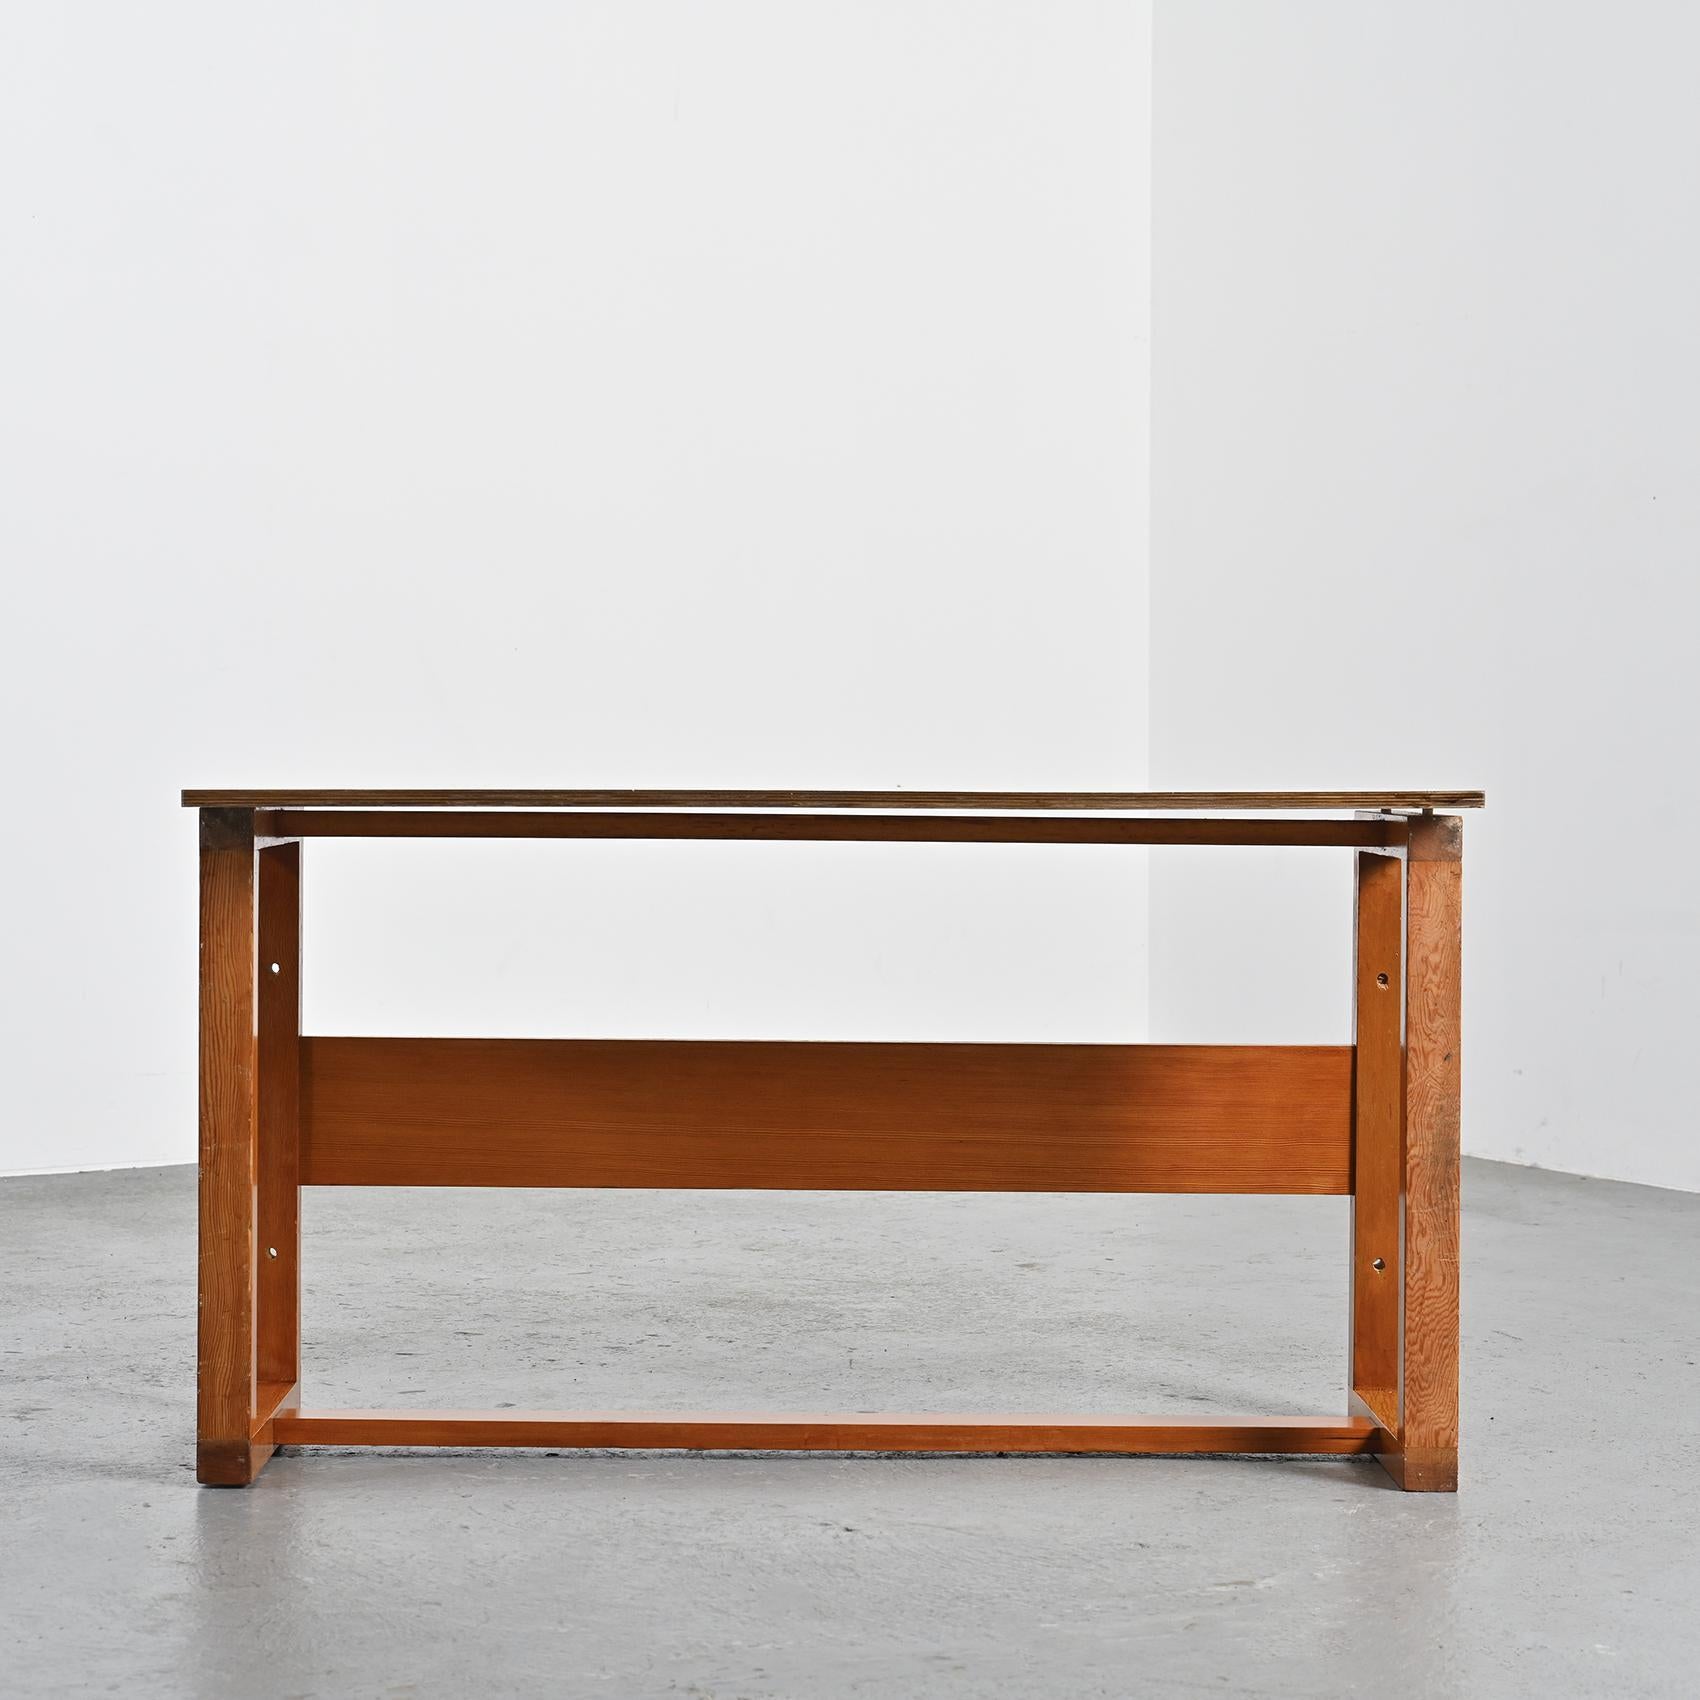 Contreplaqué Table modulaire de Pierre Guariche pour la Plagne, vers 1968 en vente